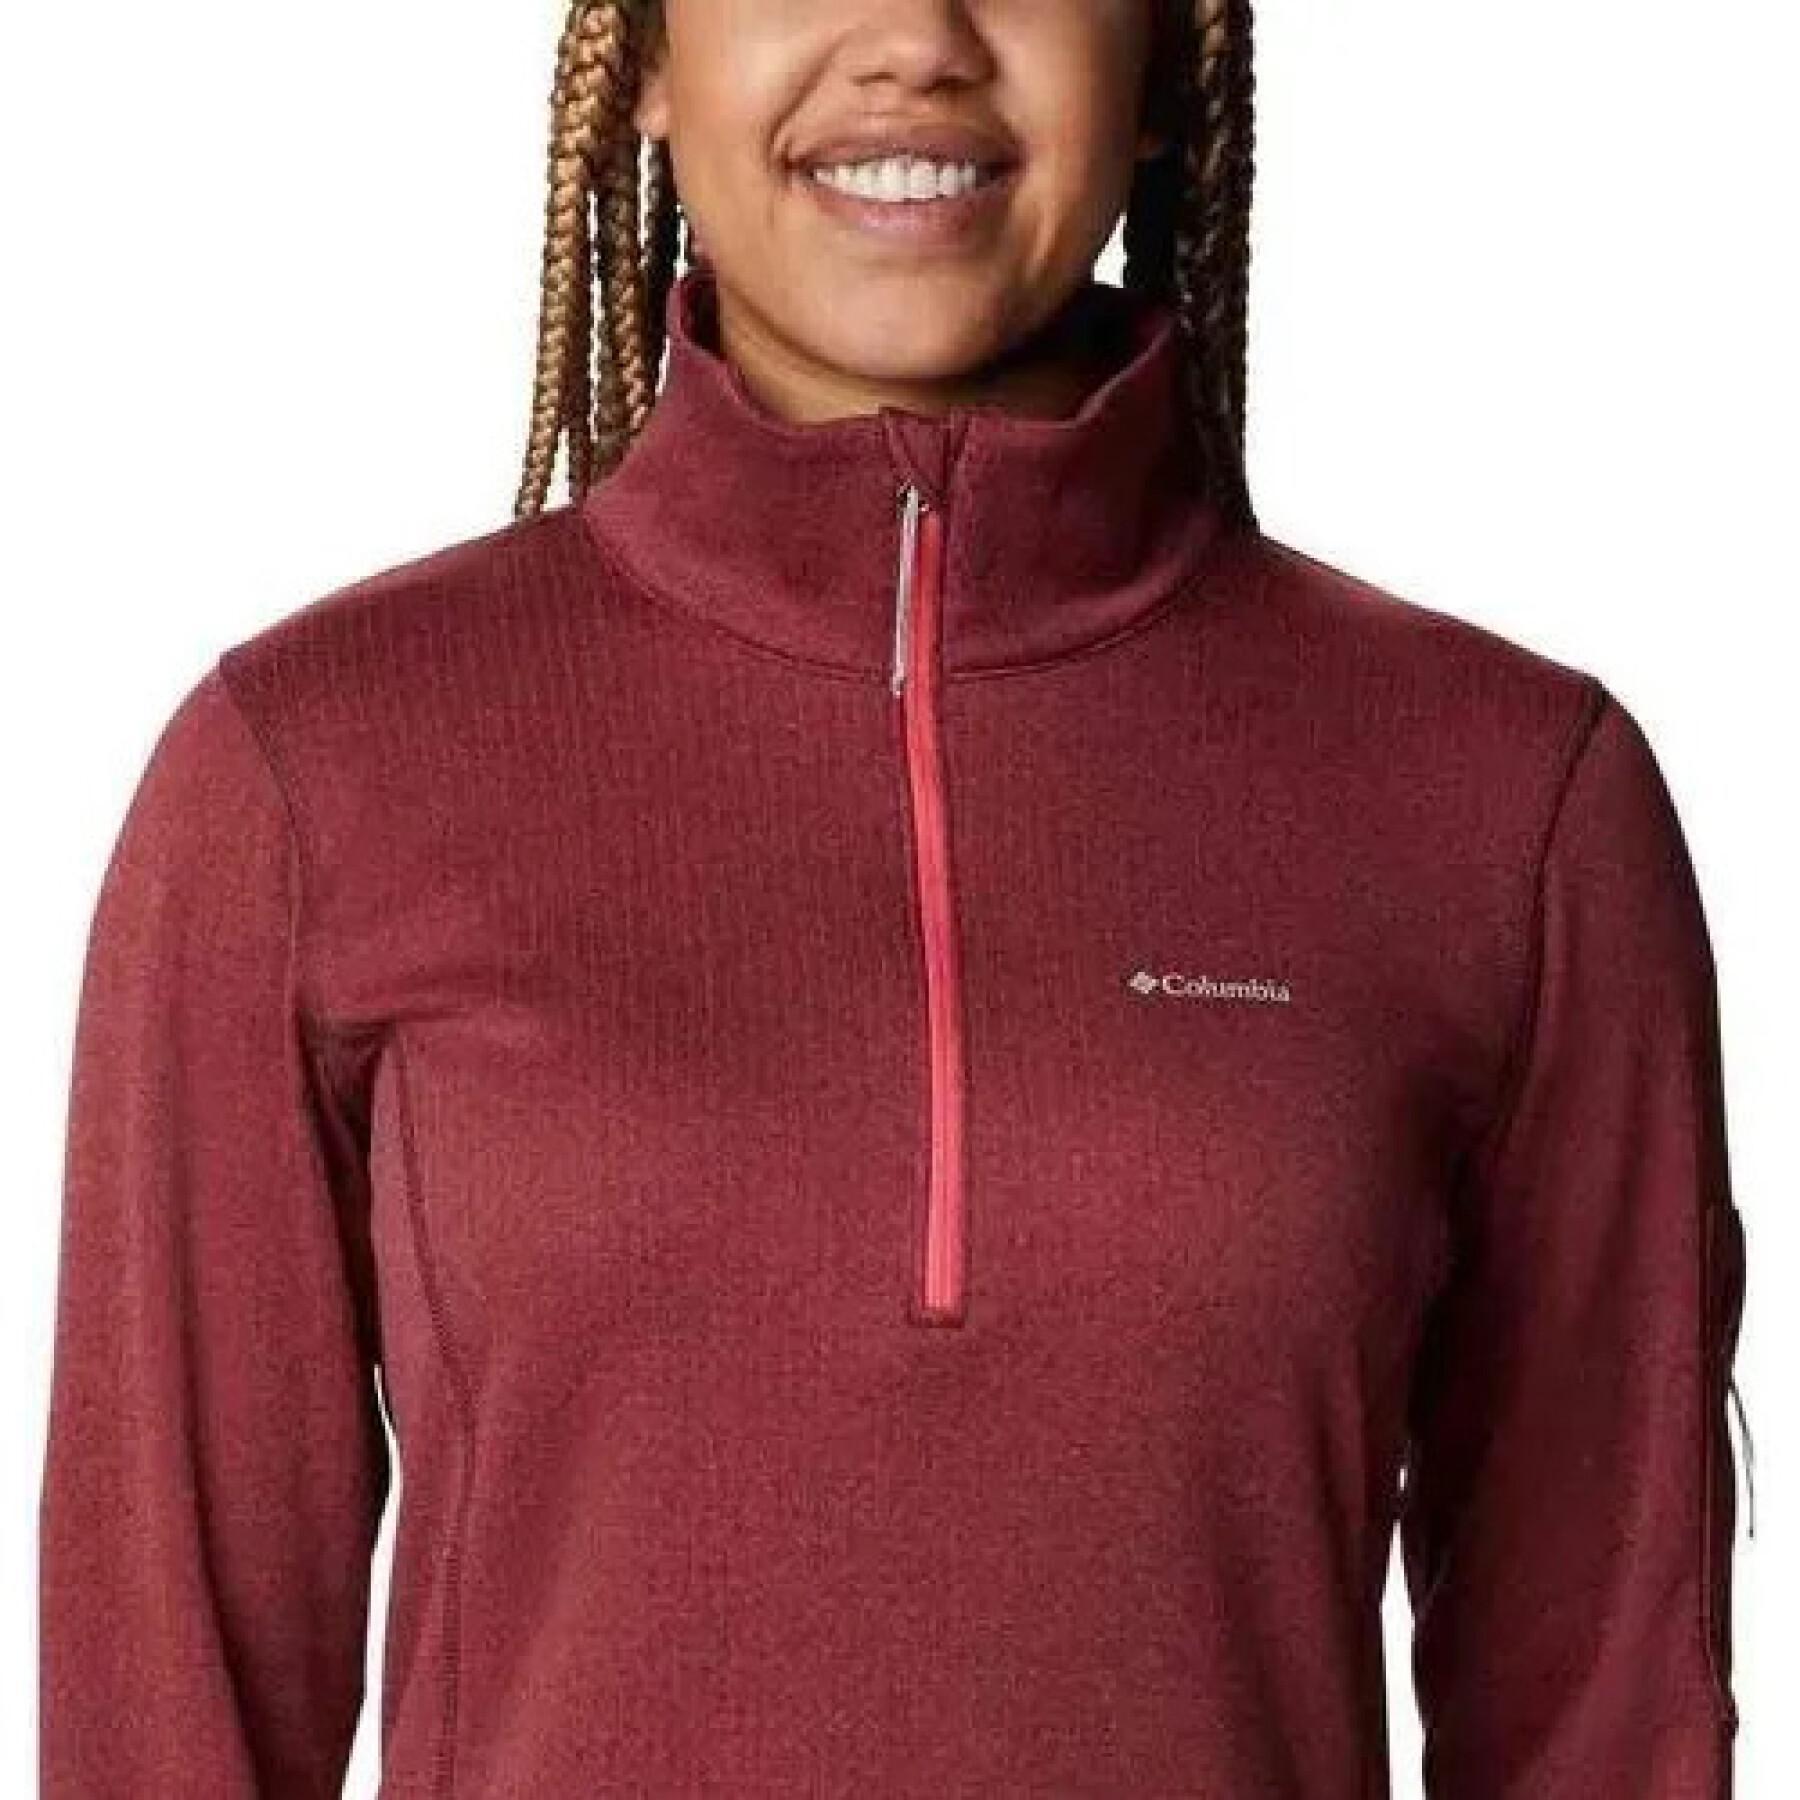 Women's 1/2 zip sweatshirt Columbia Park View Grid Fleece